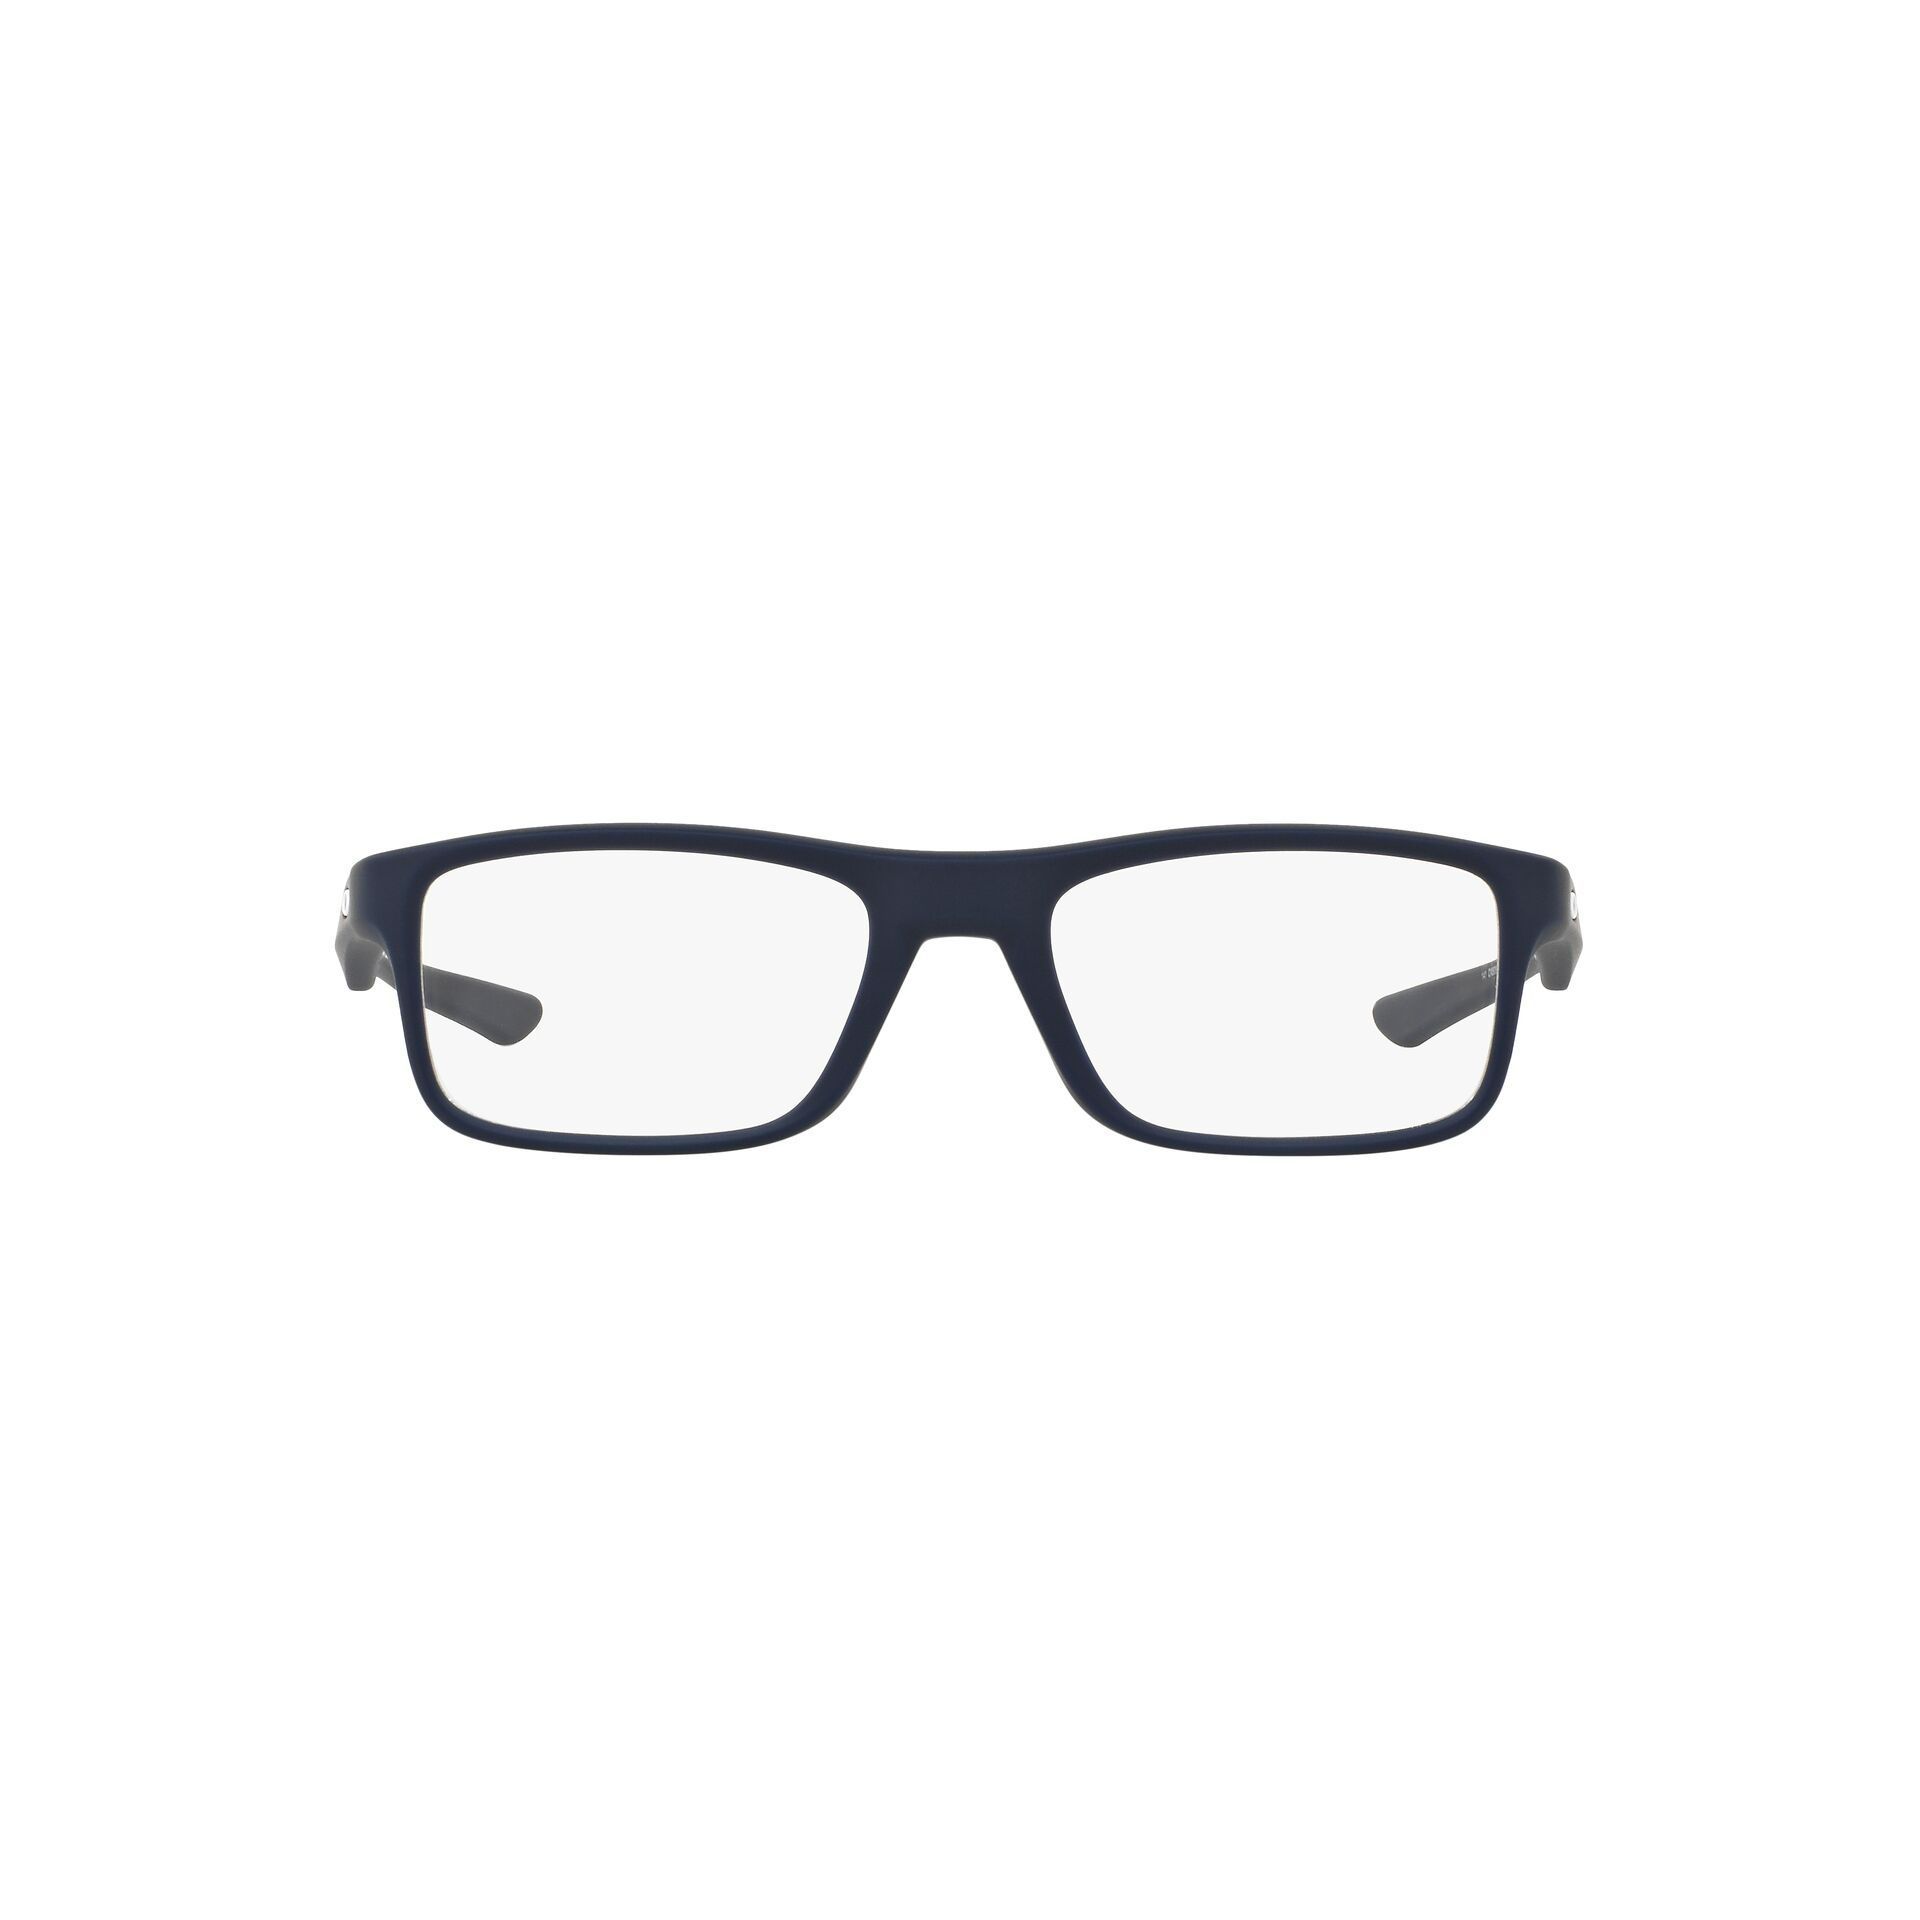 OX8081 Rectangle Eyeglasses 808103 - size  51